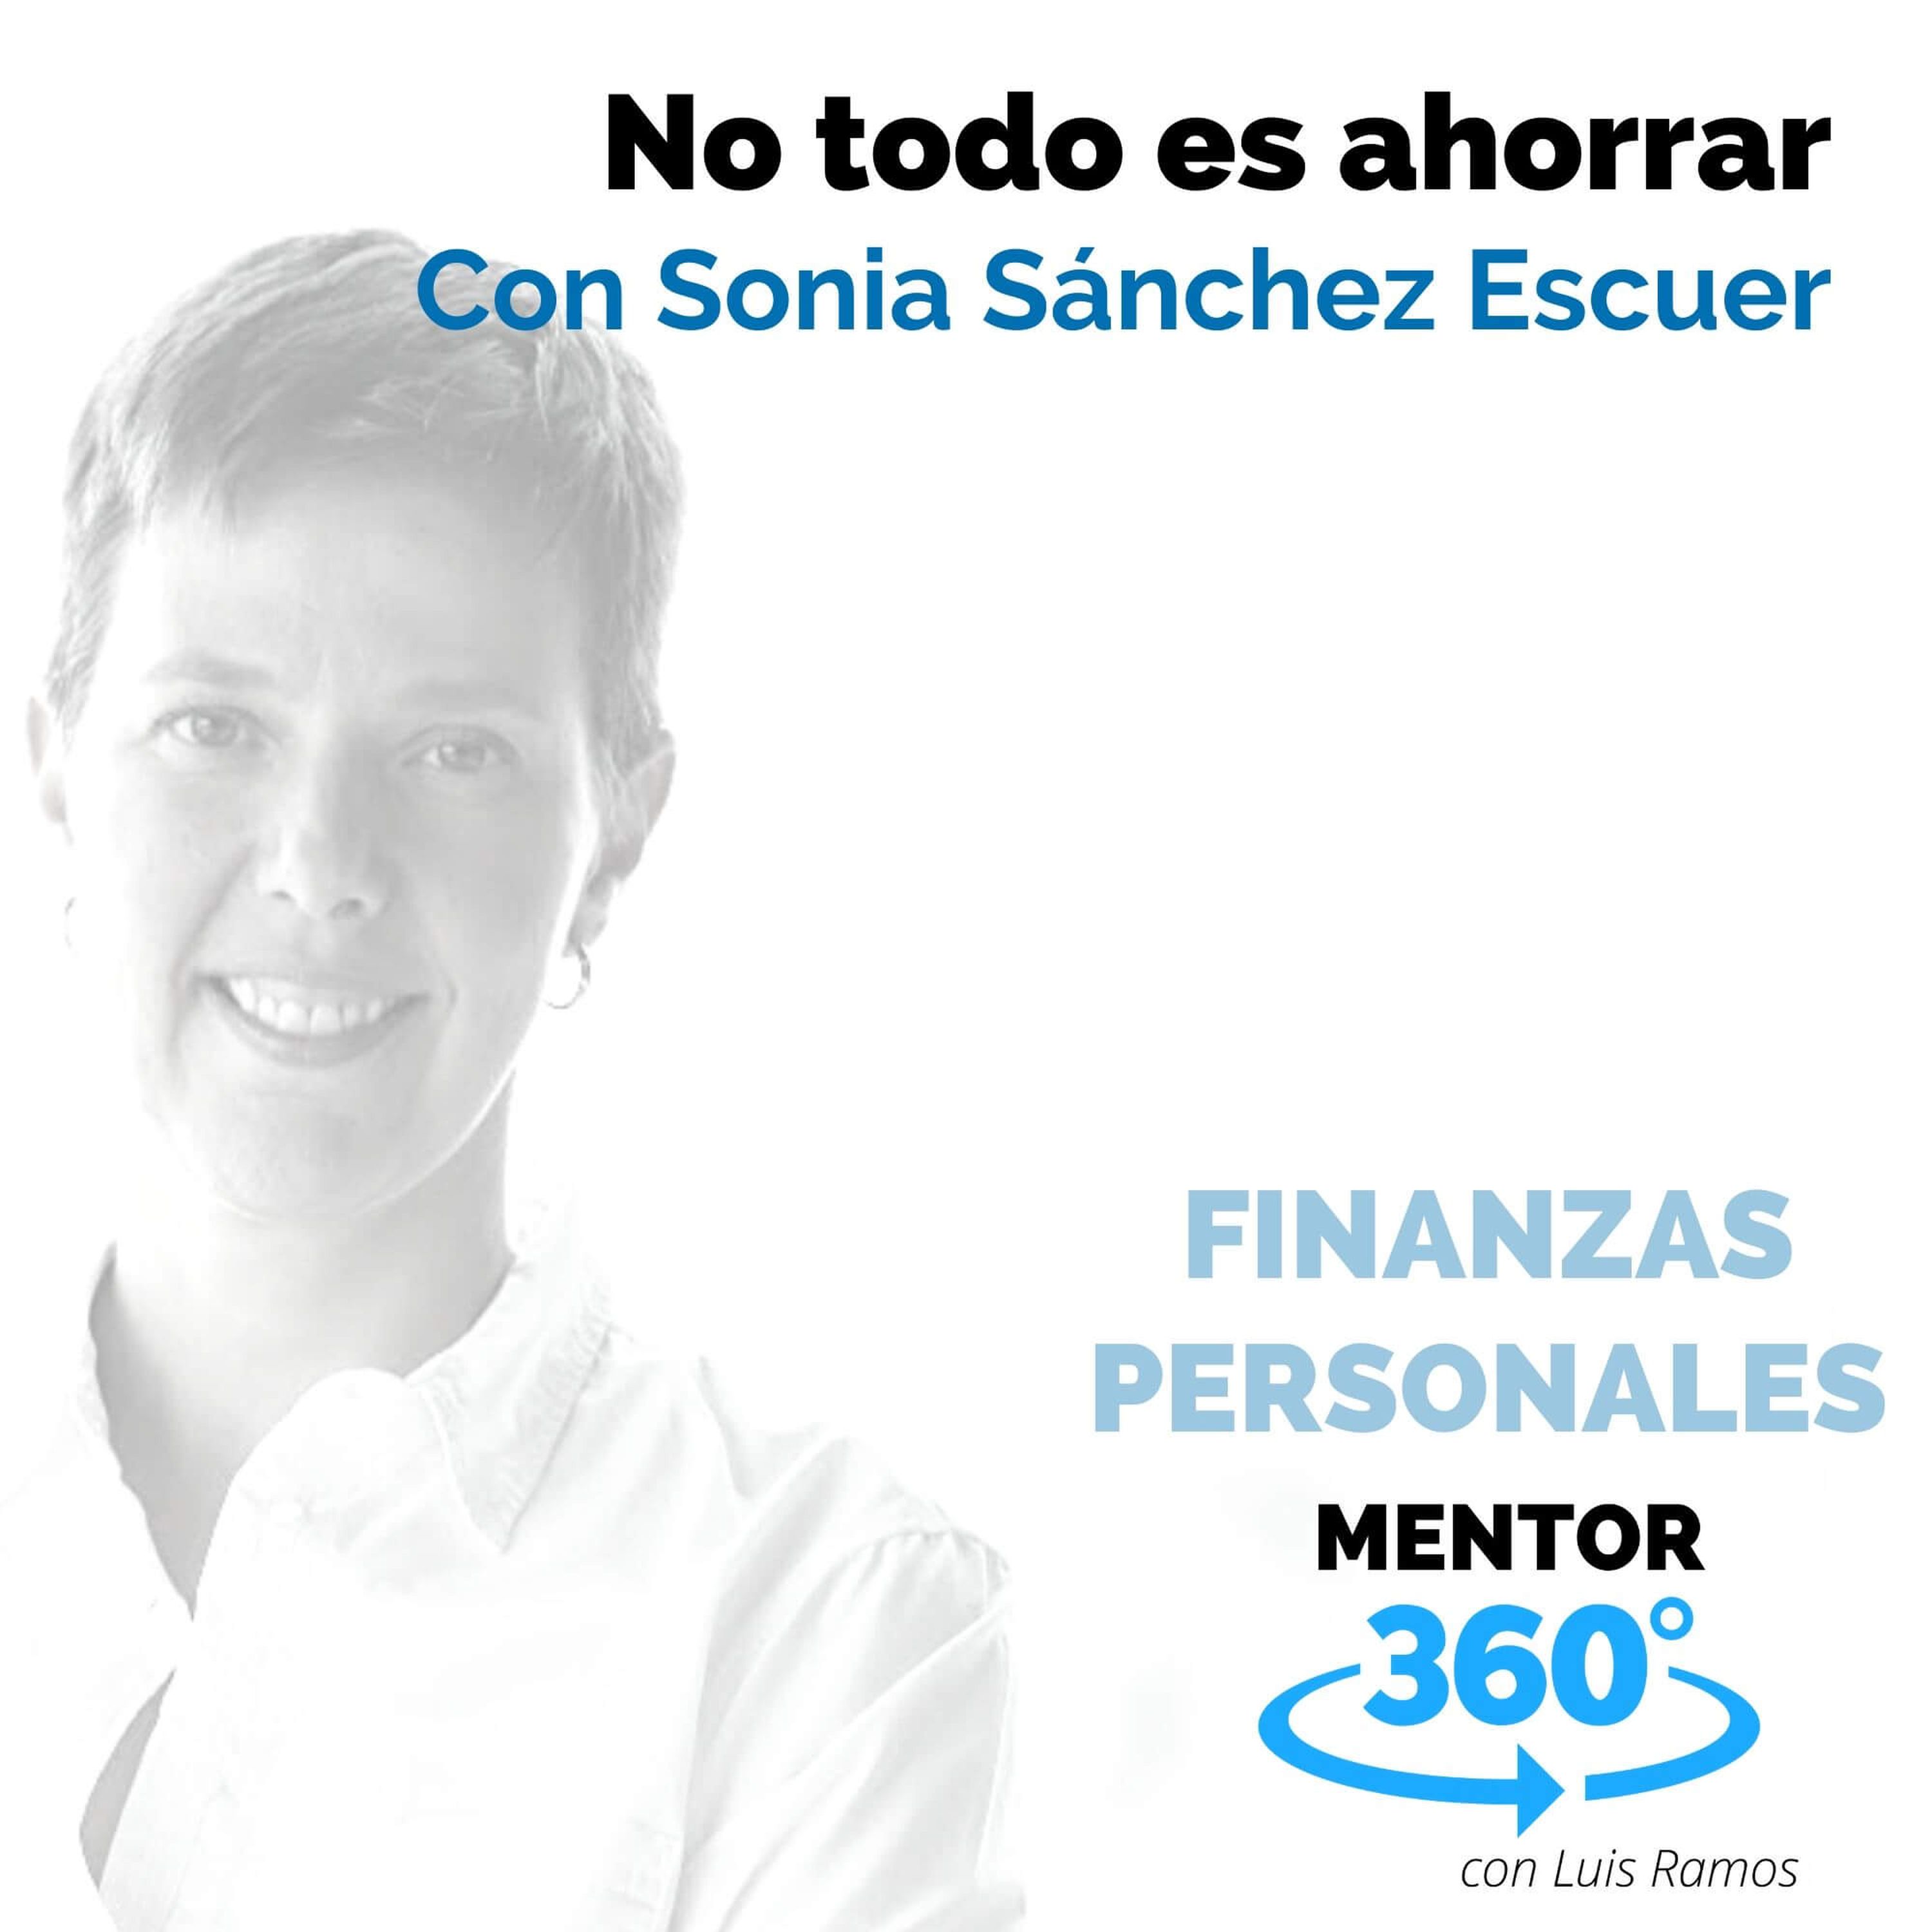 No todo es ahorrar, con Sonia Sánchez Escuer - FINANZAS PERSONALES